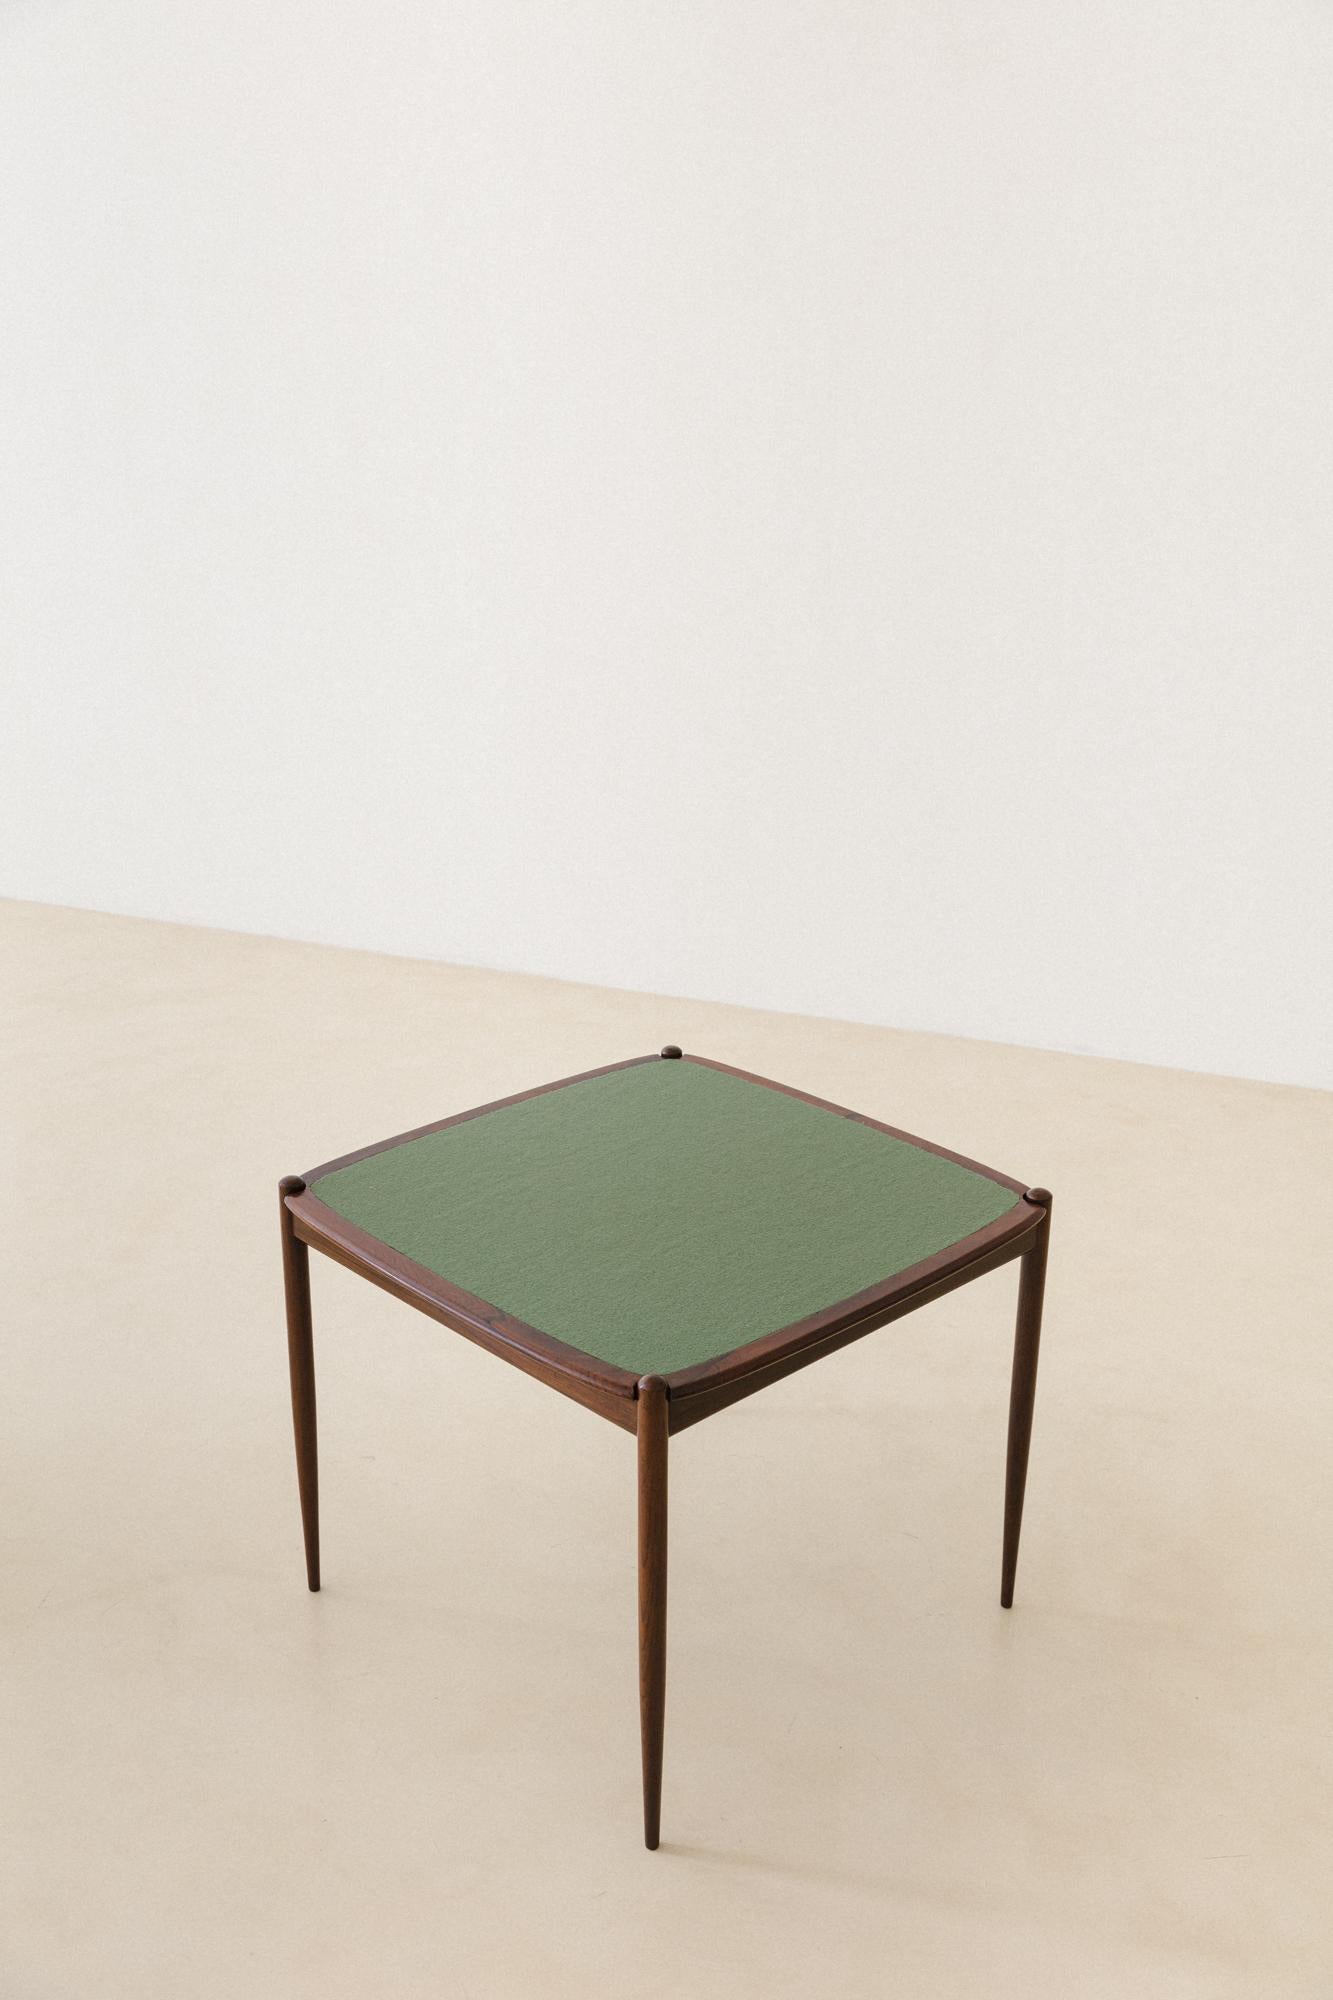 Cette table de jeu a été produite par la société brésilienne Forma S.A. Móveis e Objetos de Arte dans les années 1950. La pièce est constituée d'une structure en bois de rose et le plateau peut être utilisé des deux côtés : l'un en placages de bois